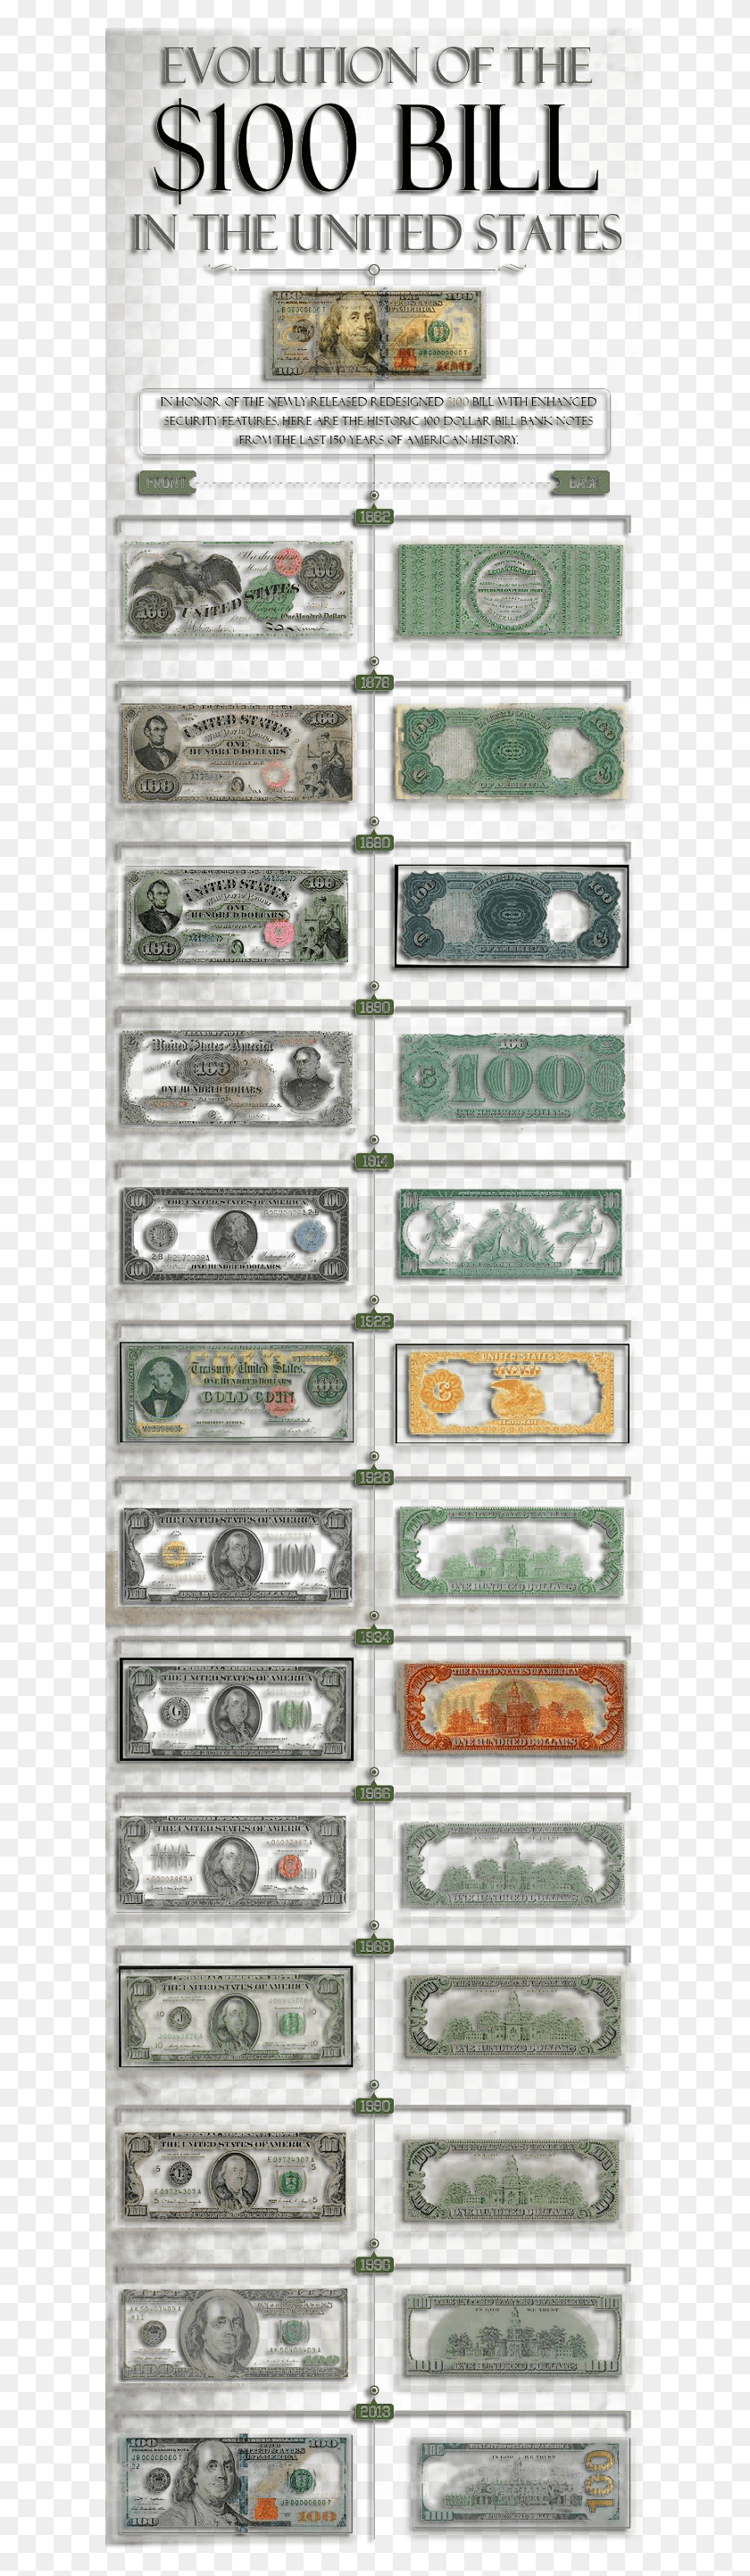 606x2826 Эволюция 100-Долларовой Банкноты Эволюция Долларовой Банкноты, Коллаж, Плакат, Реклама Hd Png Скачать